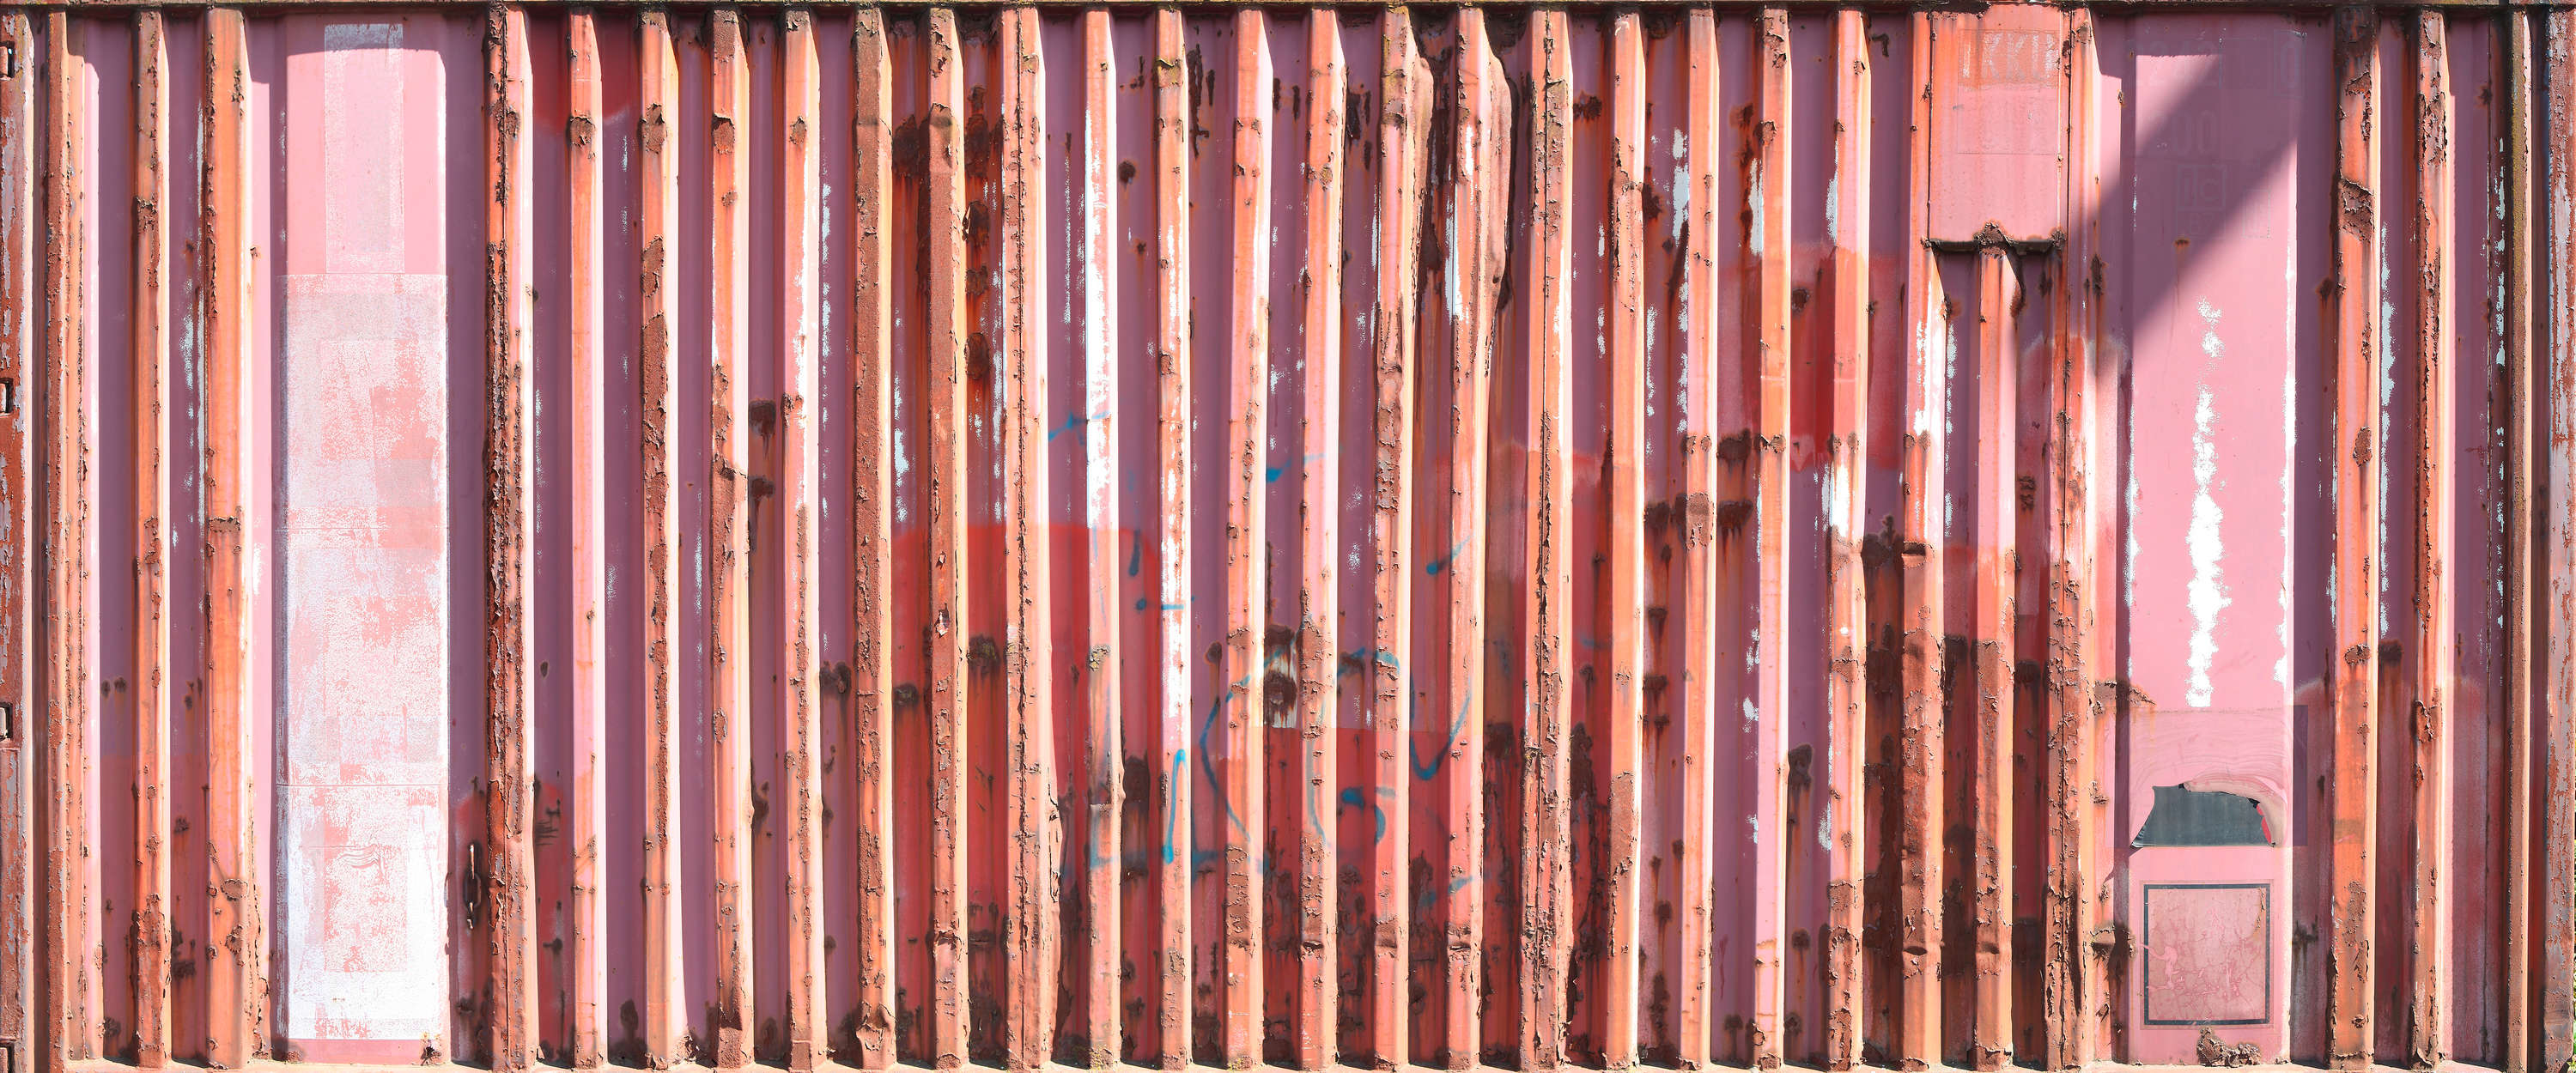             Mural de pared de contenedores metálicos rojos
        